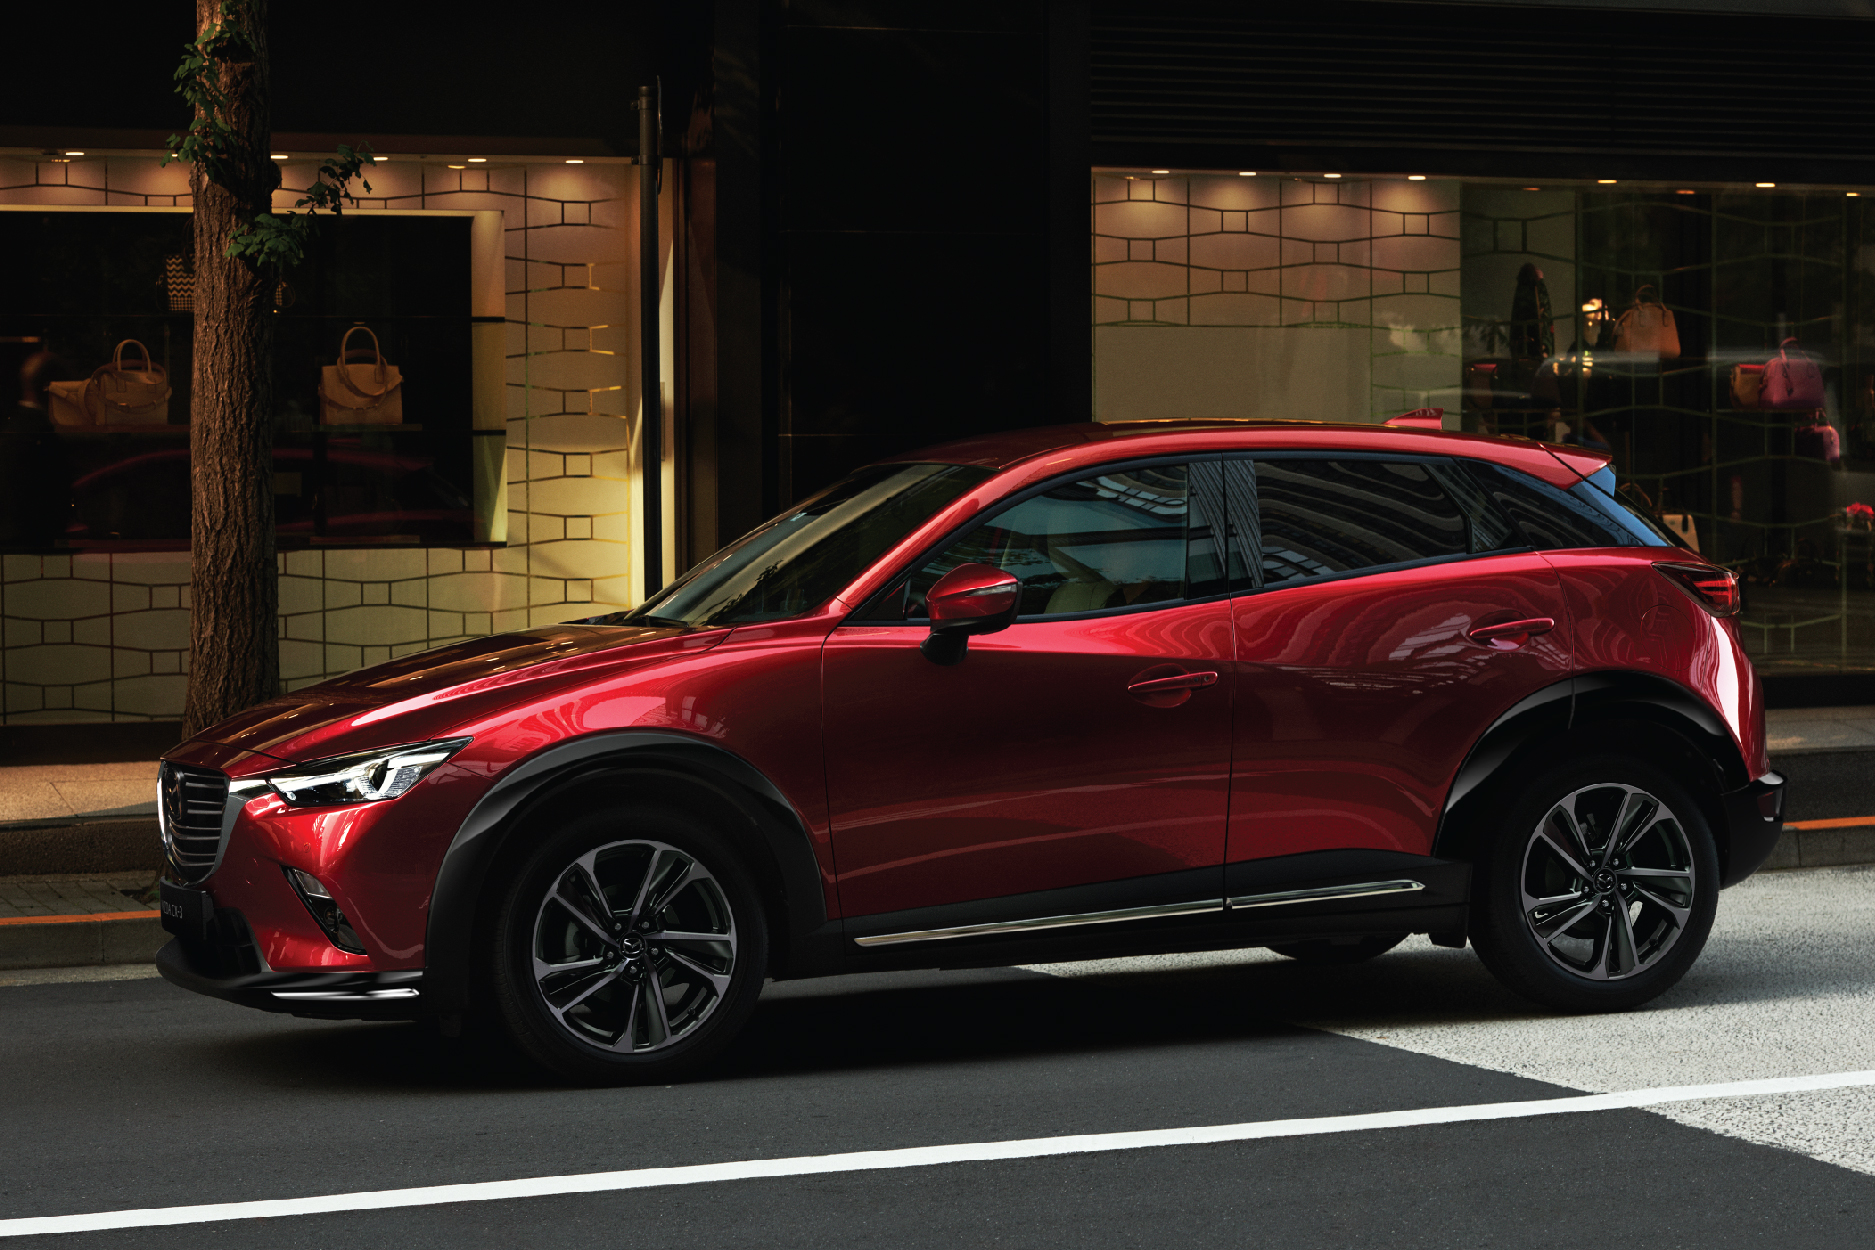 New Mazda CX-3 giải quyết ‘bài toán’ chọn SUV đô thị tiện nghi, an toàn - Ảnh 5.